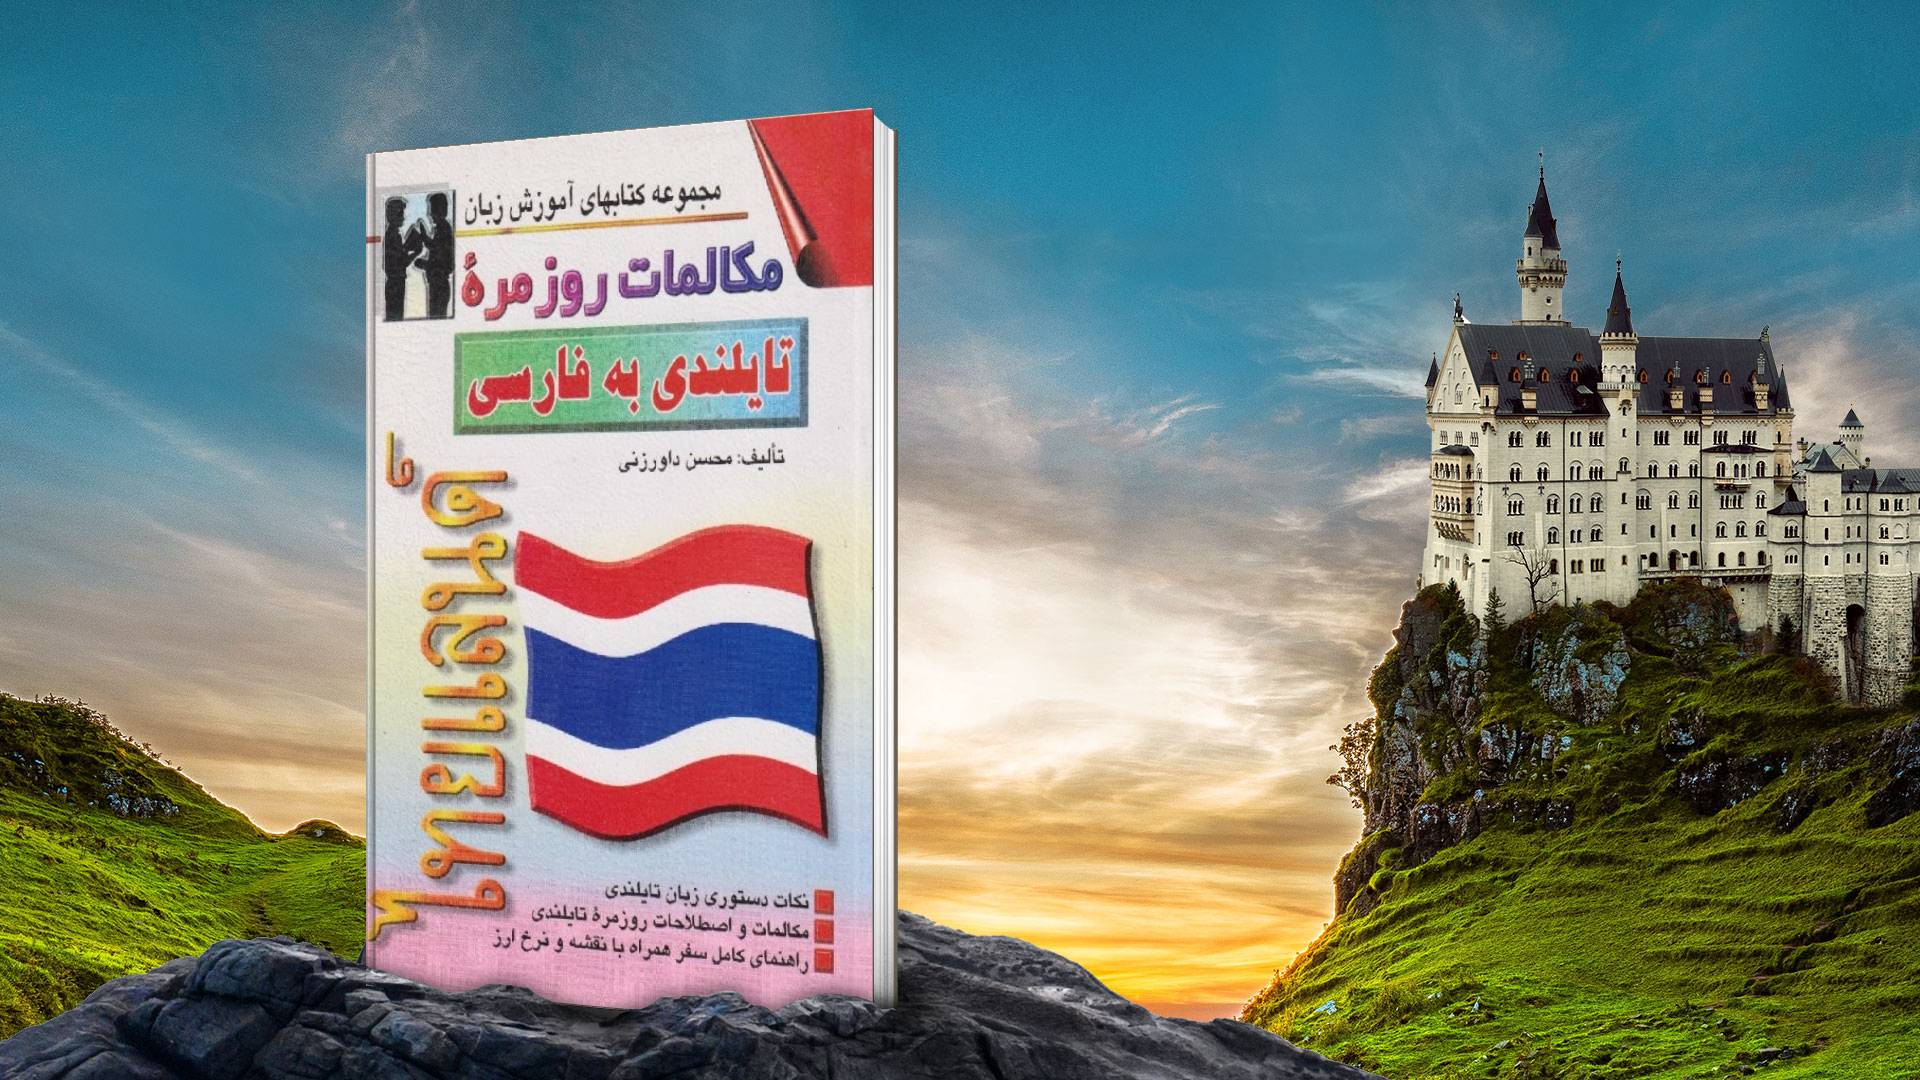 خرید کتاب زبان | زبان استور | کتاب خودآموز زبان تایلندی | کتاب مکالمات روزمره تایلندی به فارسی